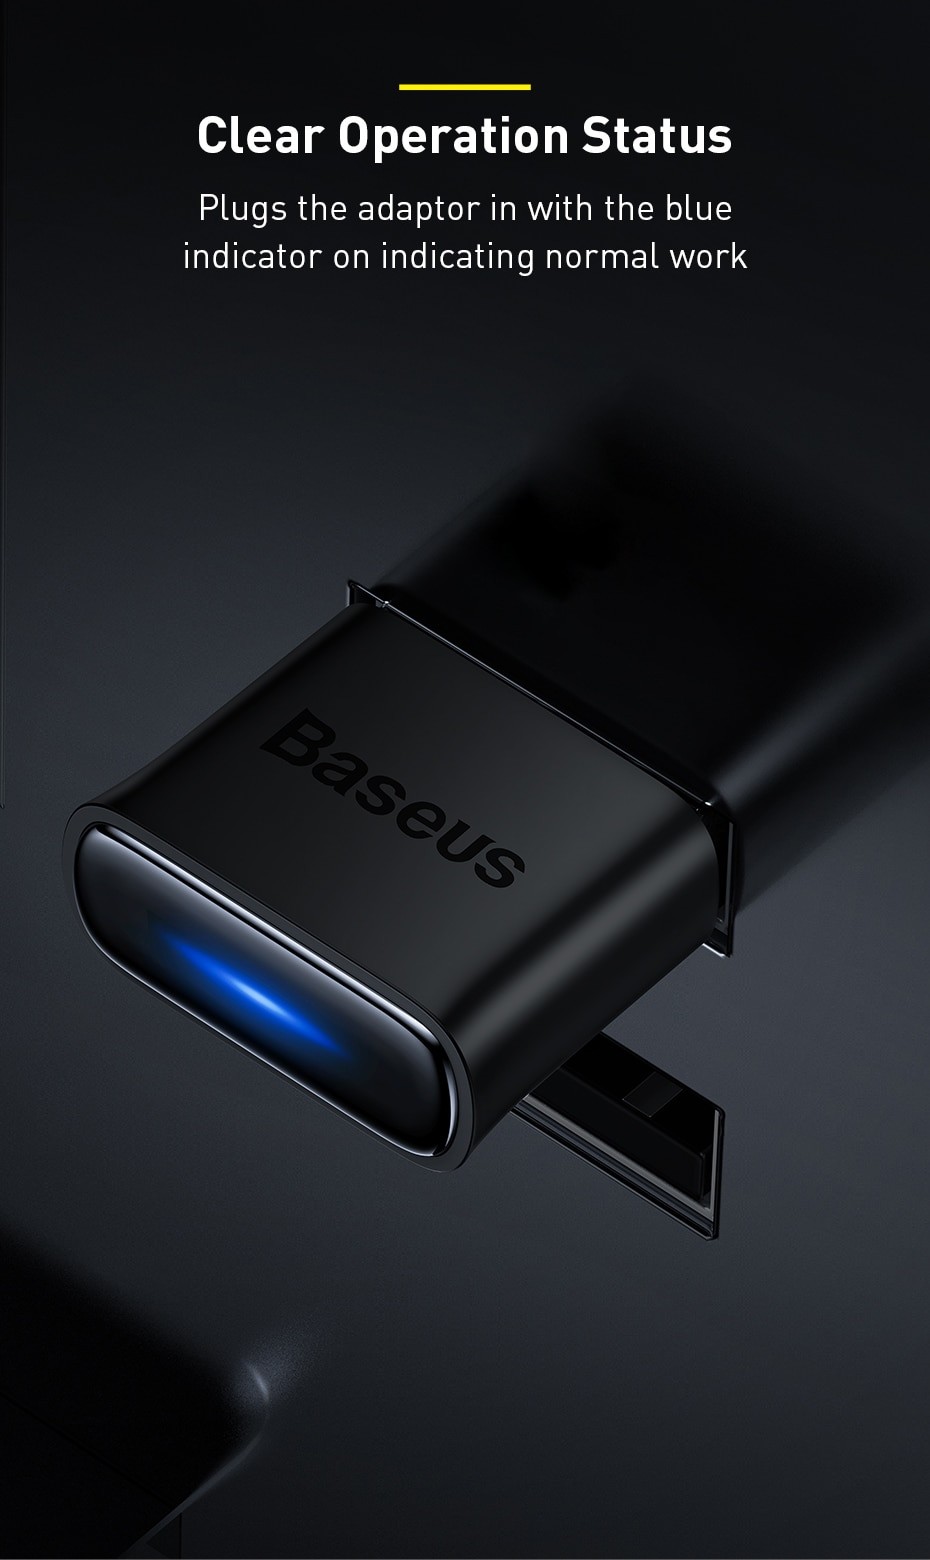 Baseus Adaptateur USB Bleutooth 5.1 pour PC et Macbook, à prix pas cher